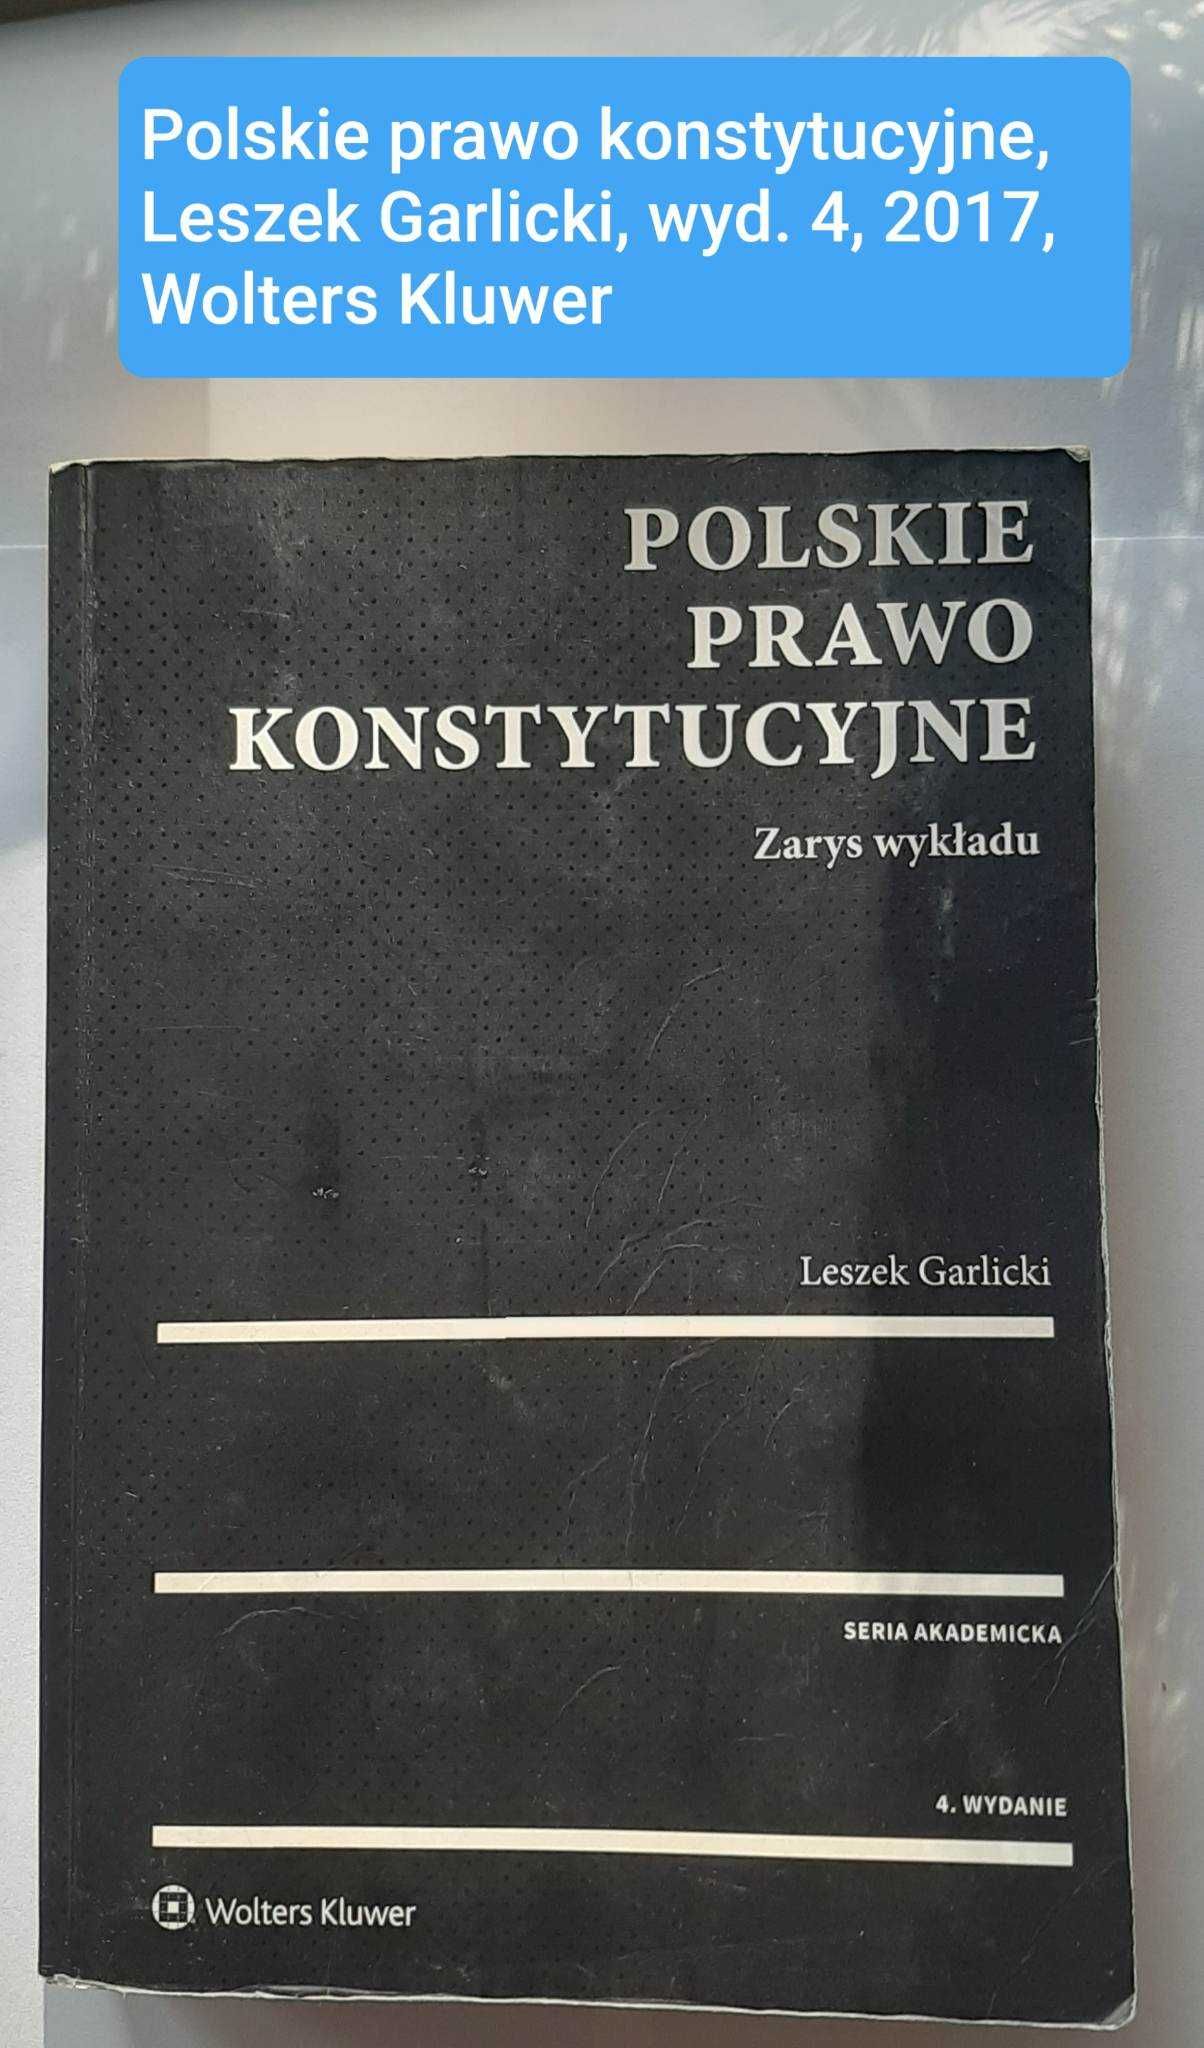 Polskie prawo konstytucyjne, L. Garlicki wyd. 4